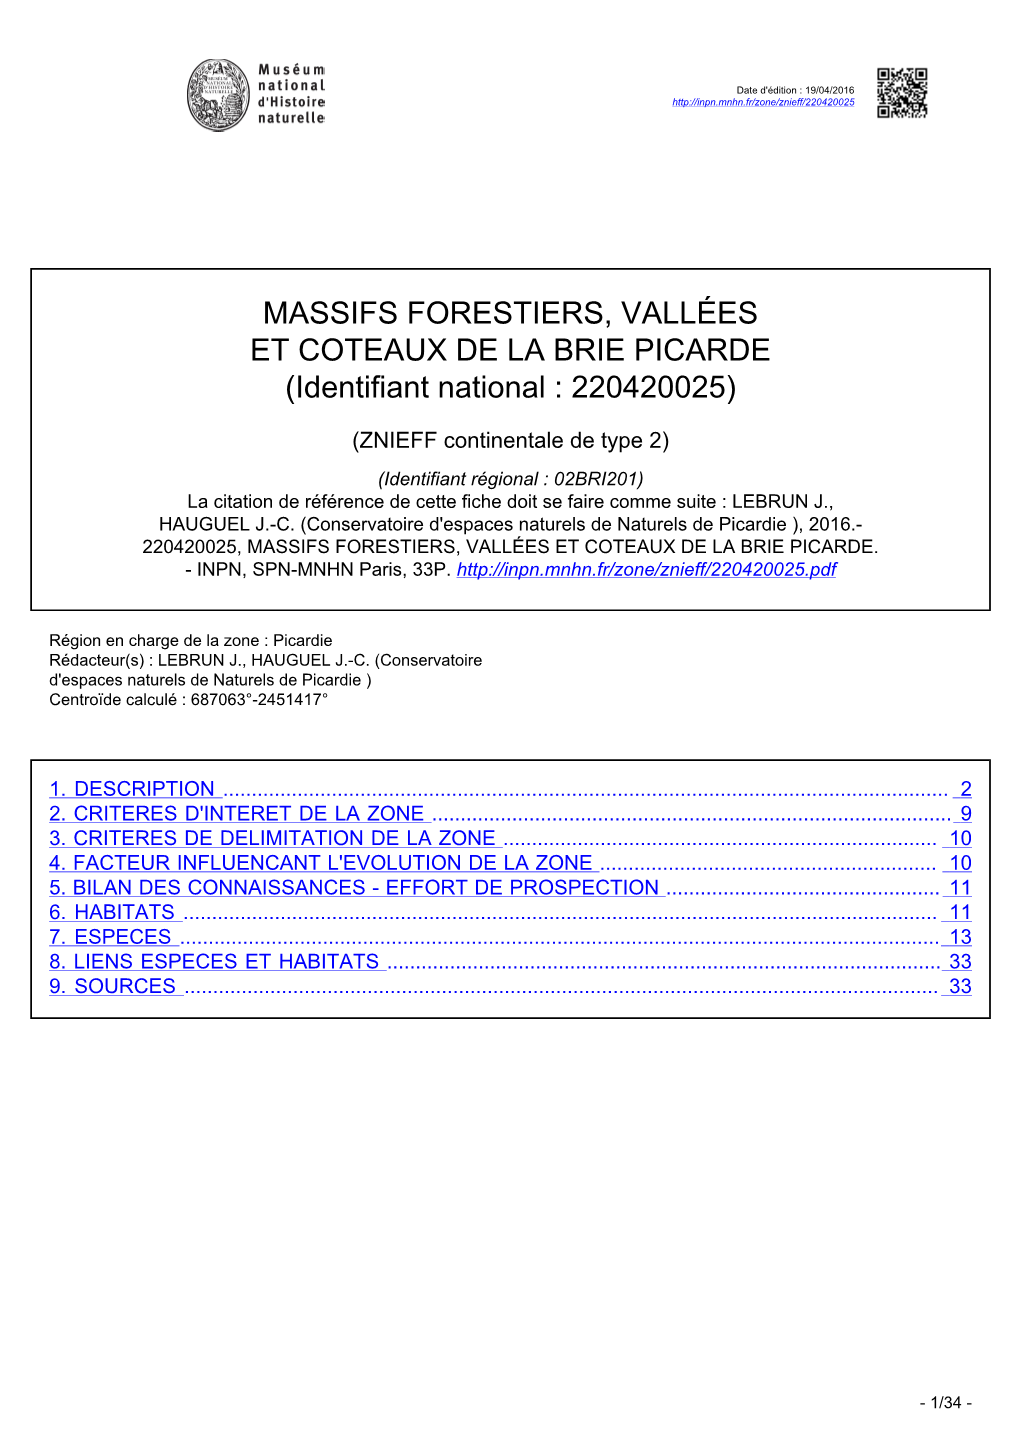 MASSIFS FORESTIERS, VALLÉES ET COTEAUX DE LA BRIE PICARDE (Identifiant National : 220420025)